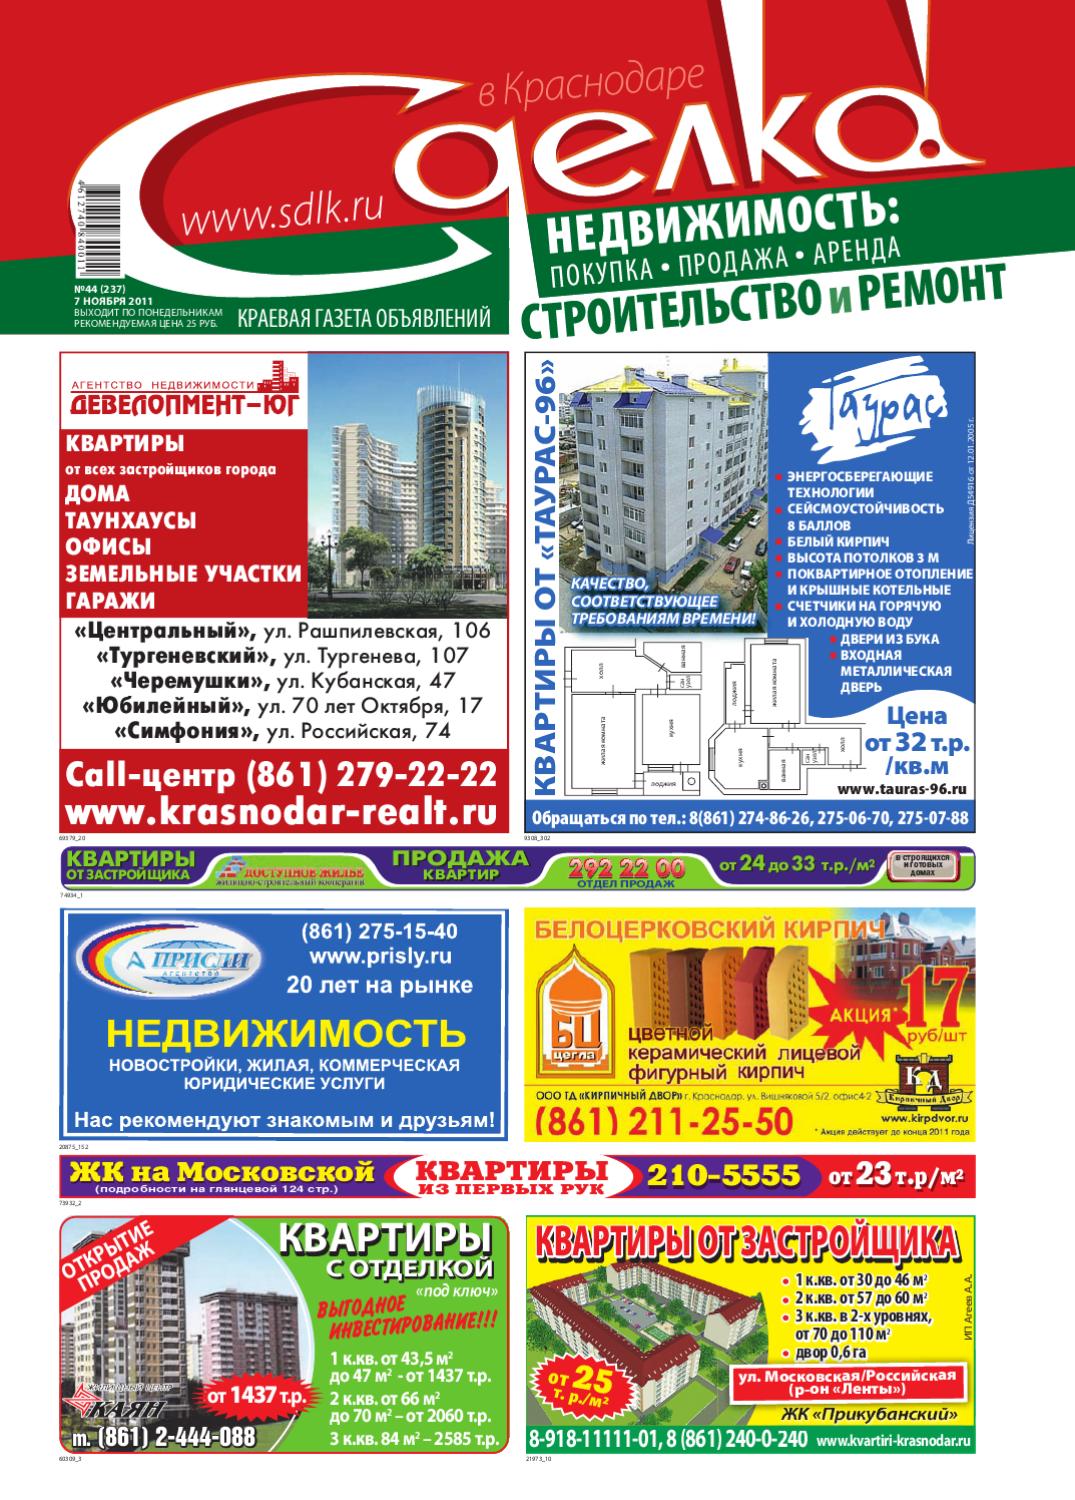 Сделка в Краснодаре №237, ноябрь 2011